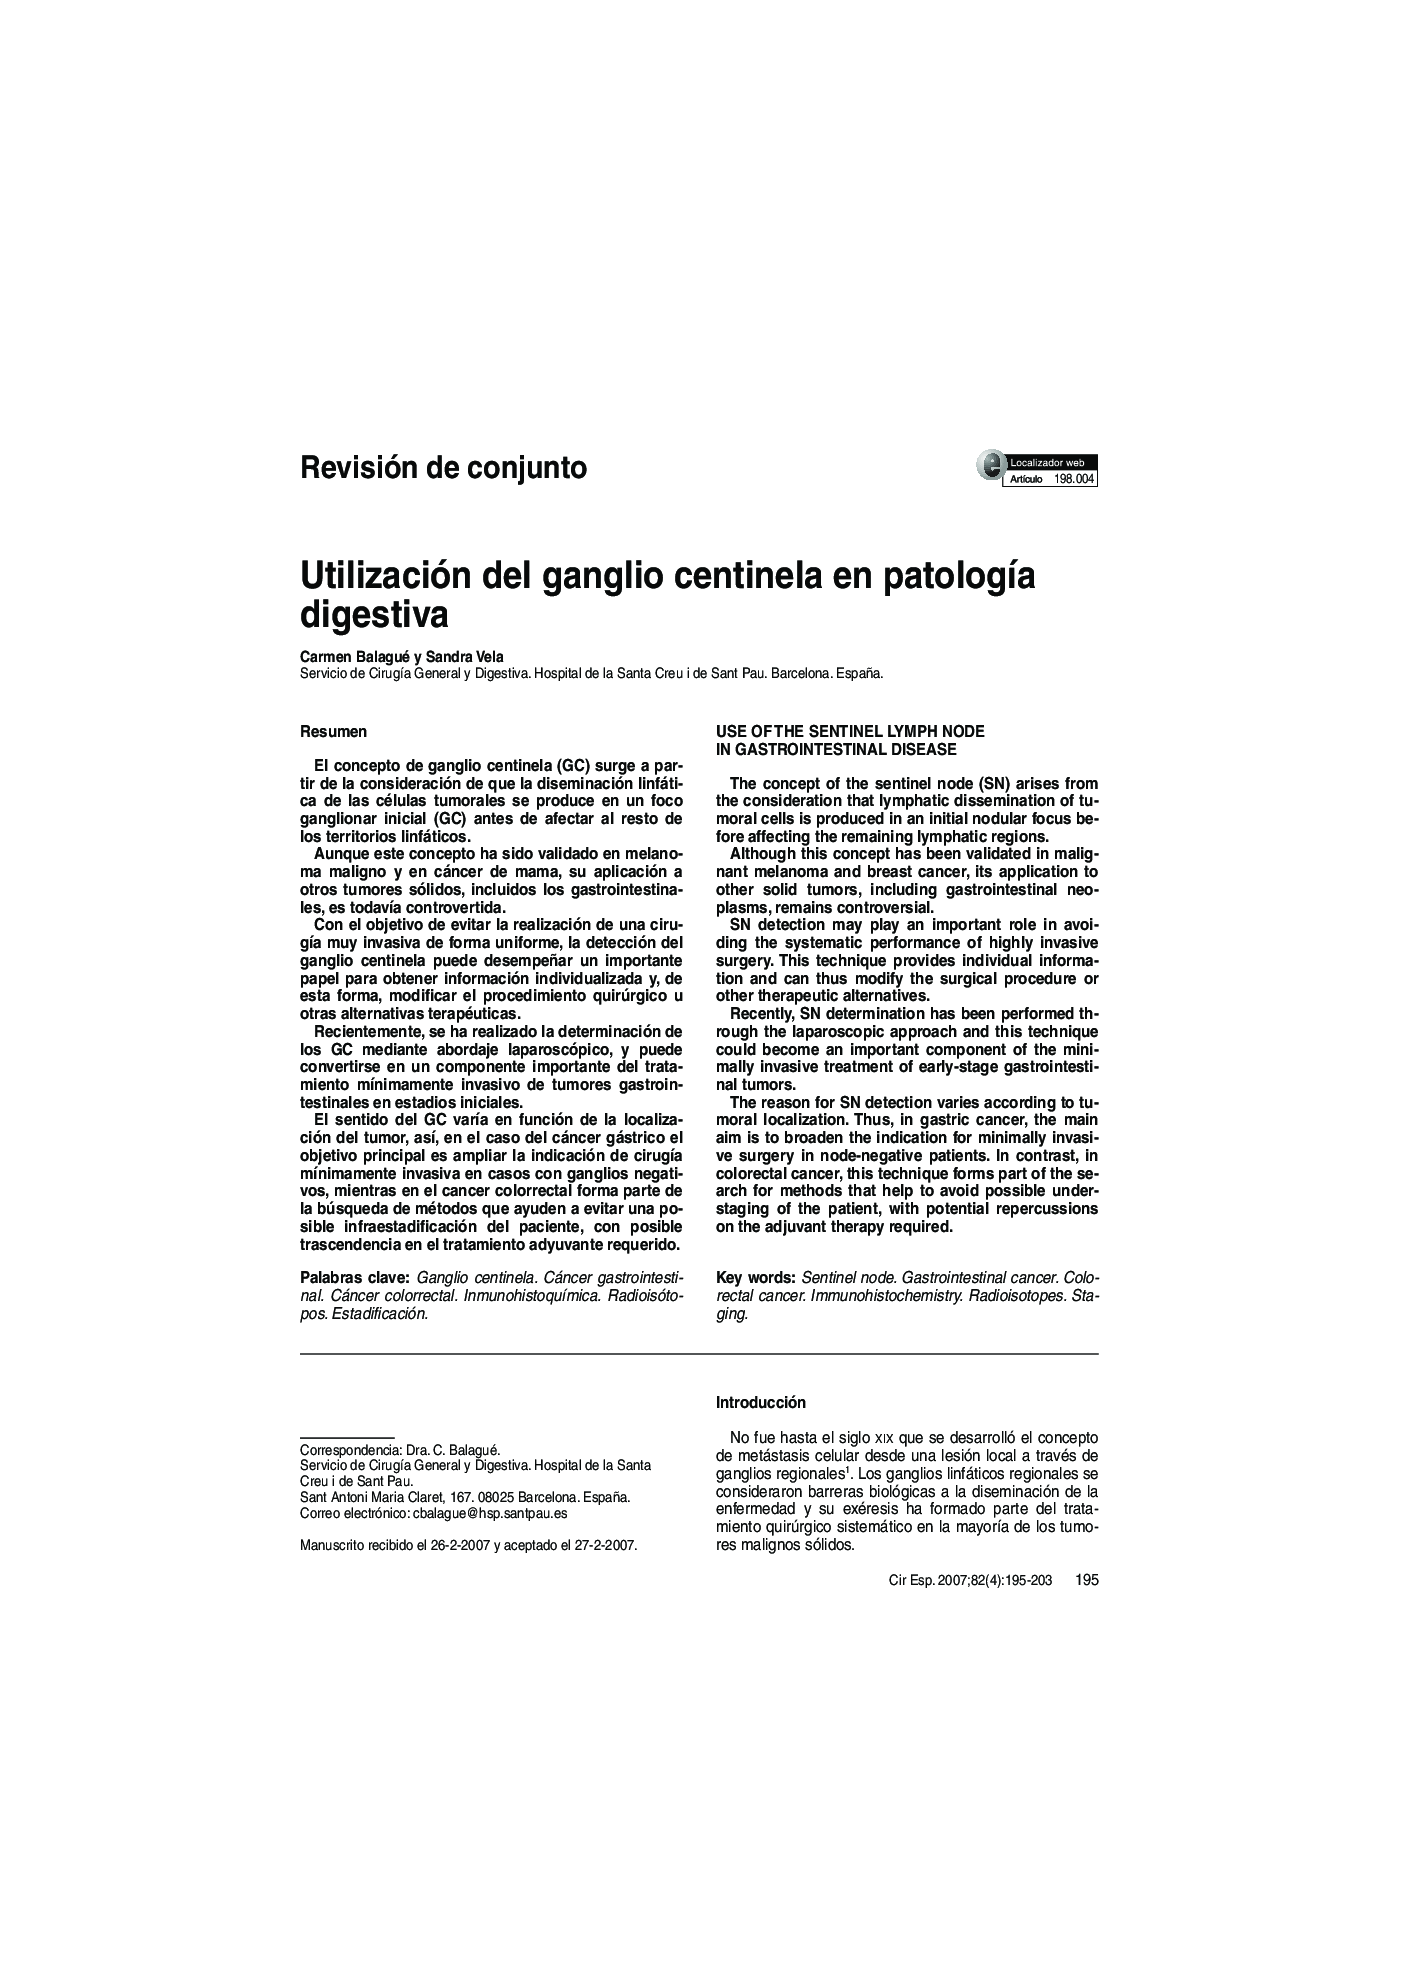 Utilización del ganglio centinela en patologÃ­a digestiva